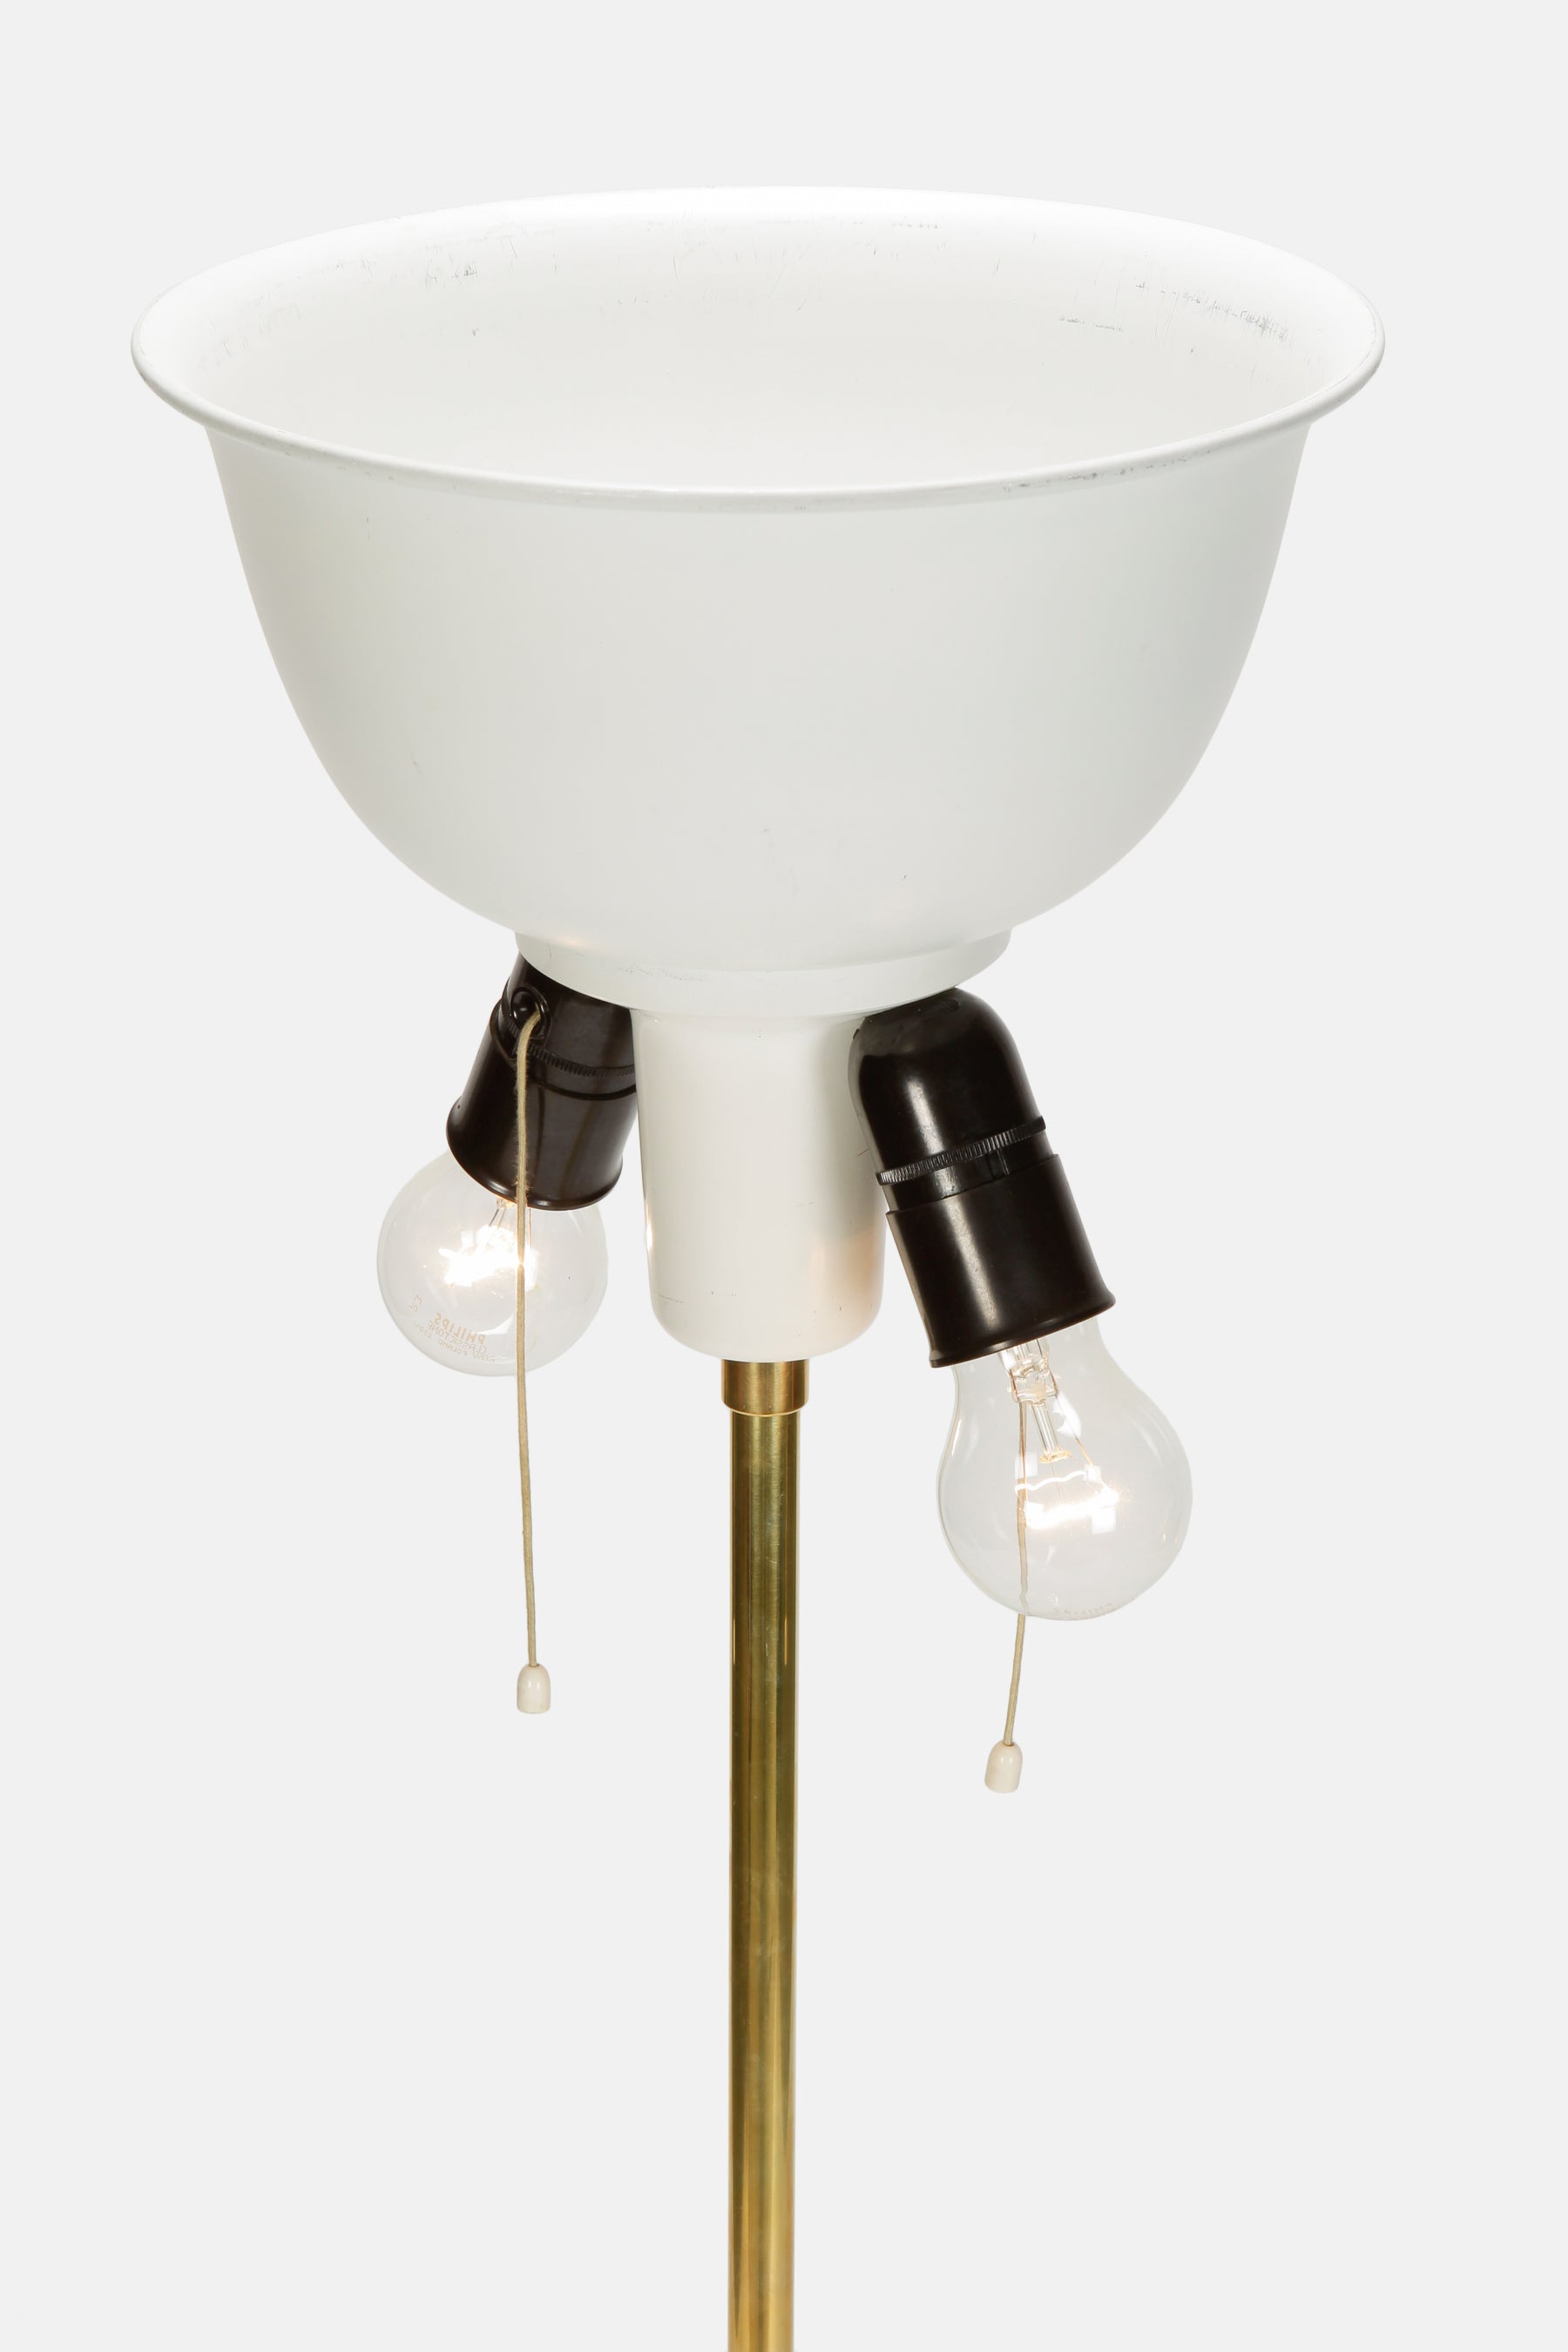 Schweizer Stehlampe Megal AG, 60er